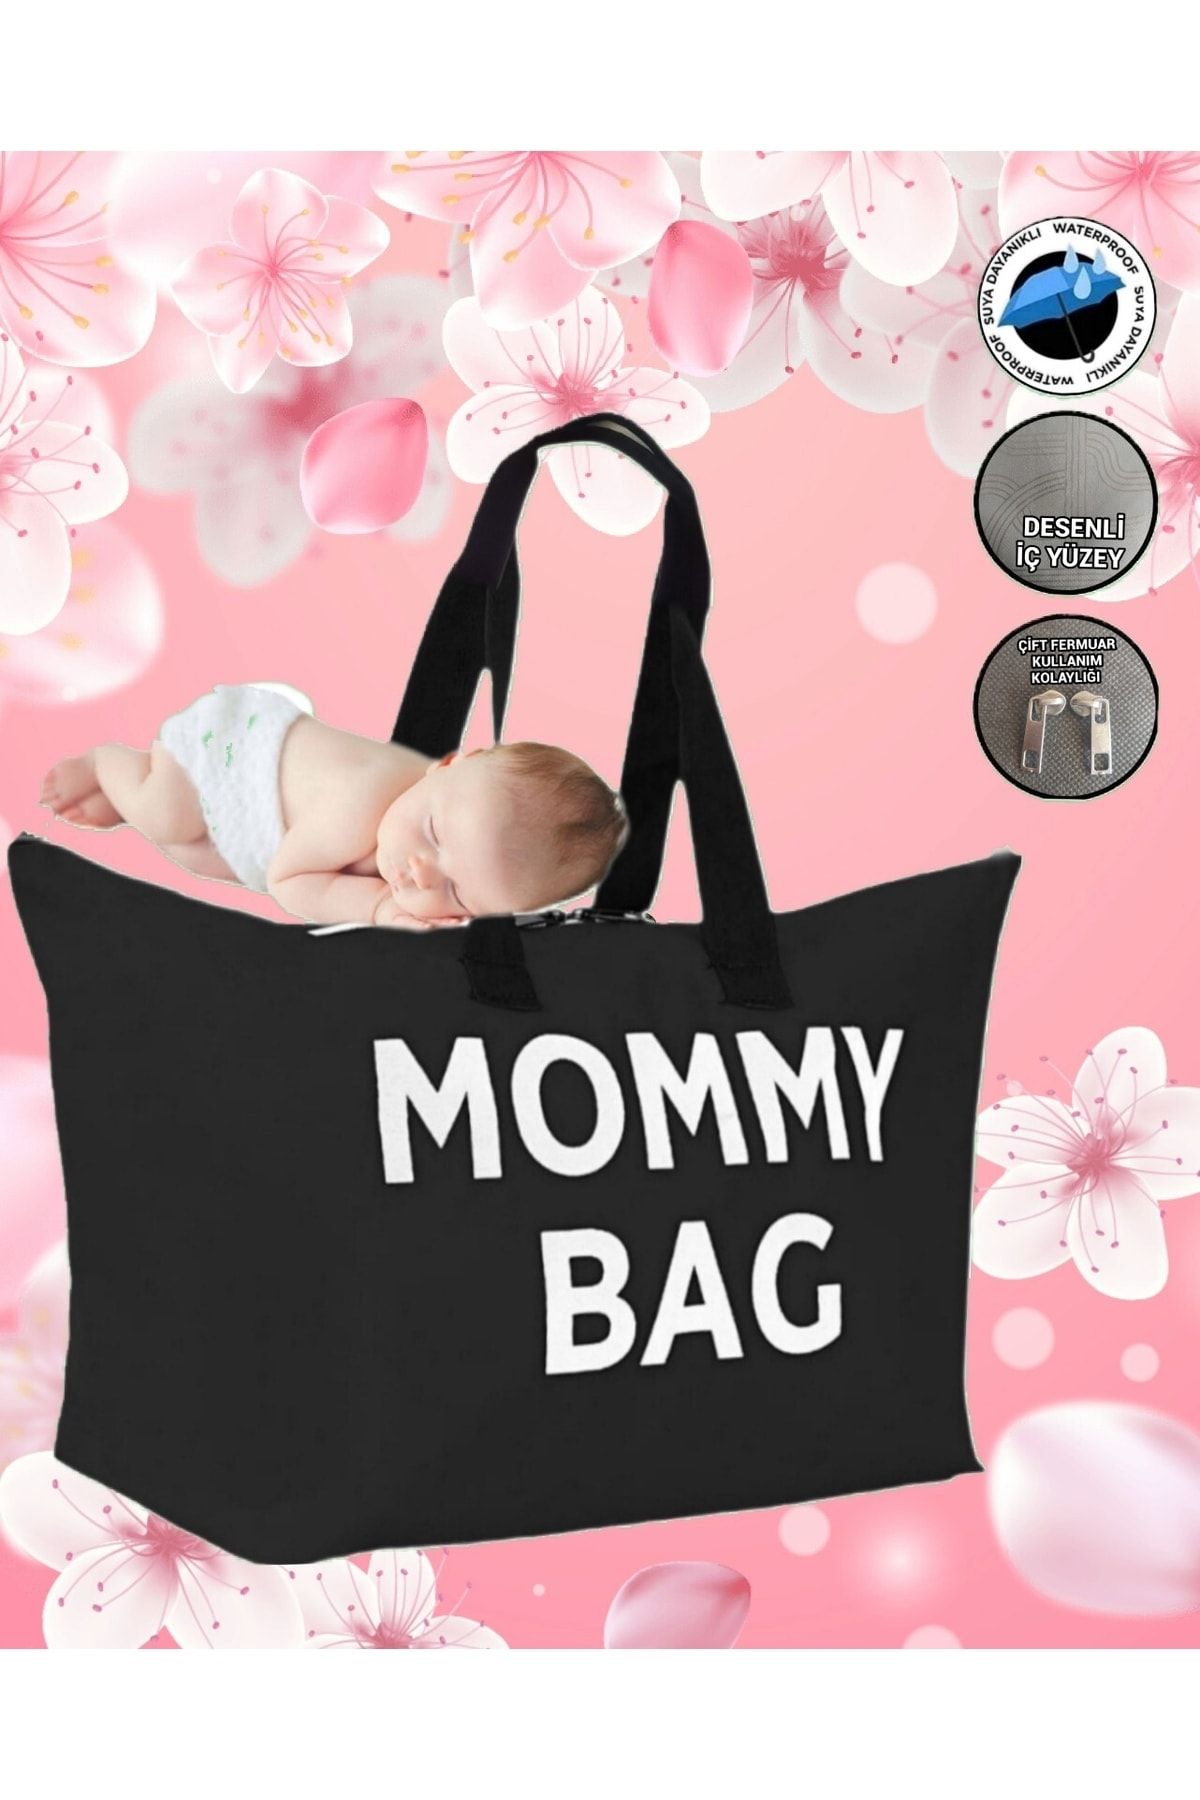 Topyekünparti Mommy Bag Siyah Çanta - Anne Bebek Bakım Çantası